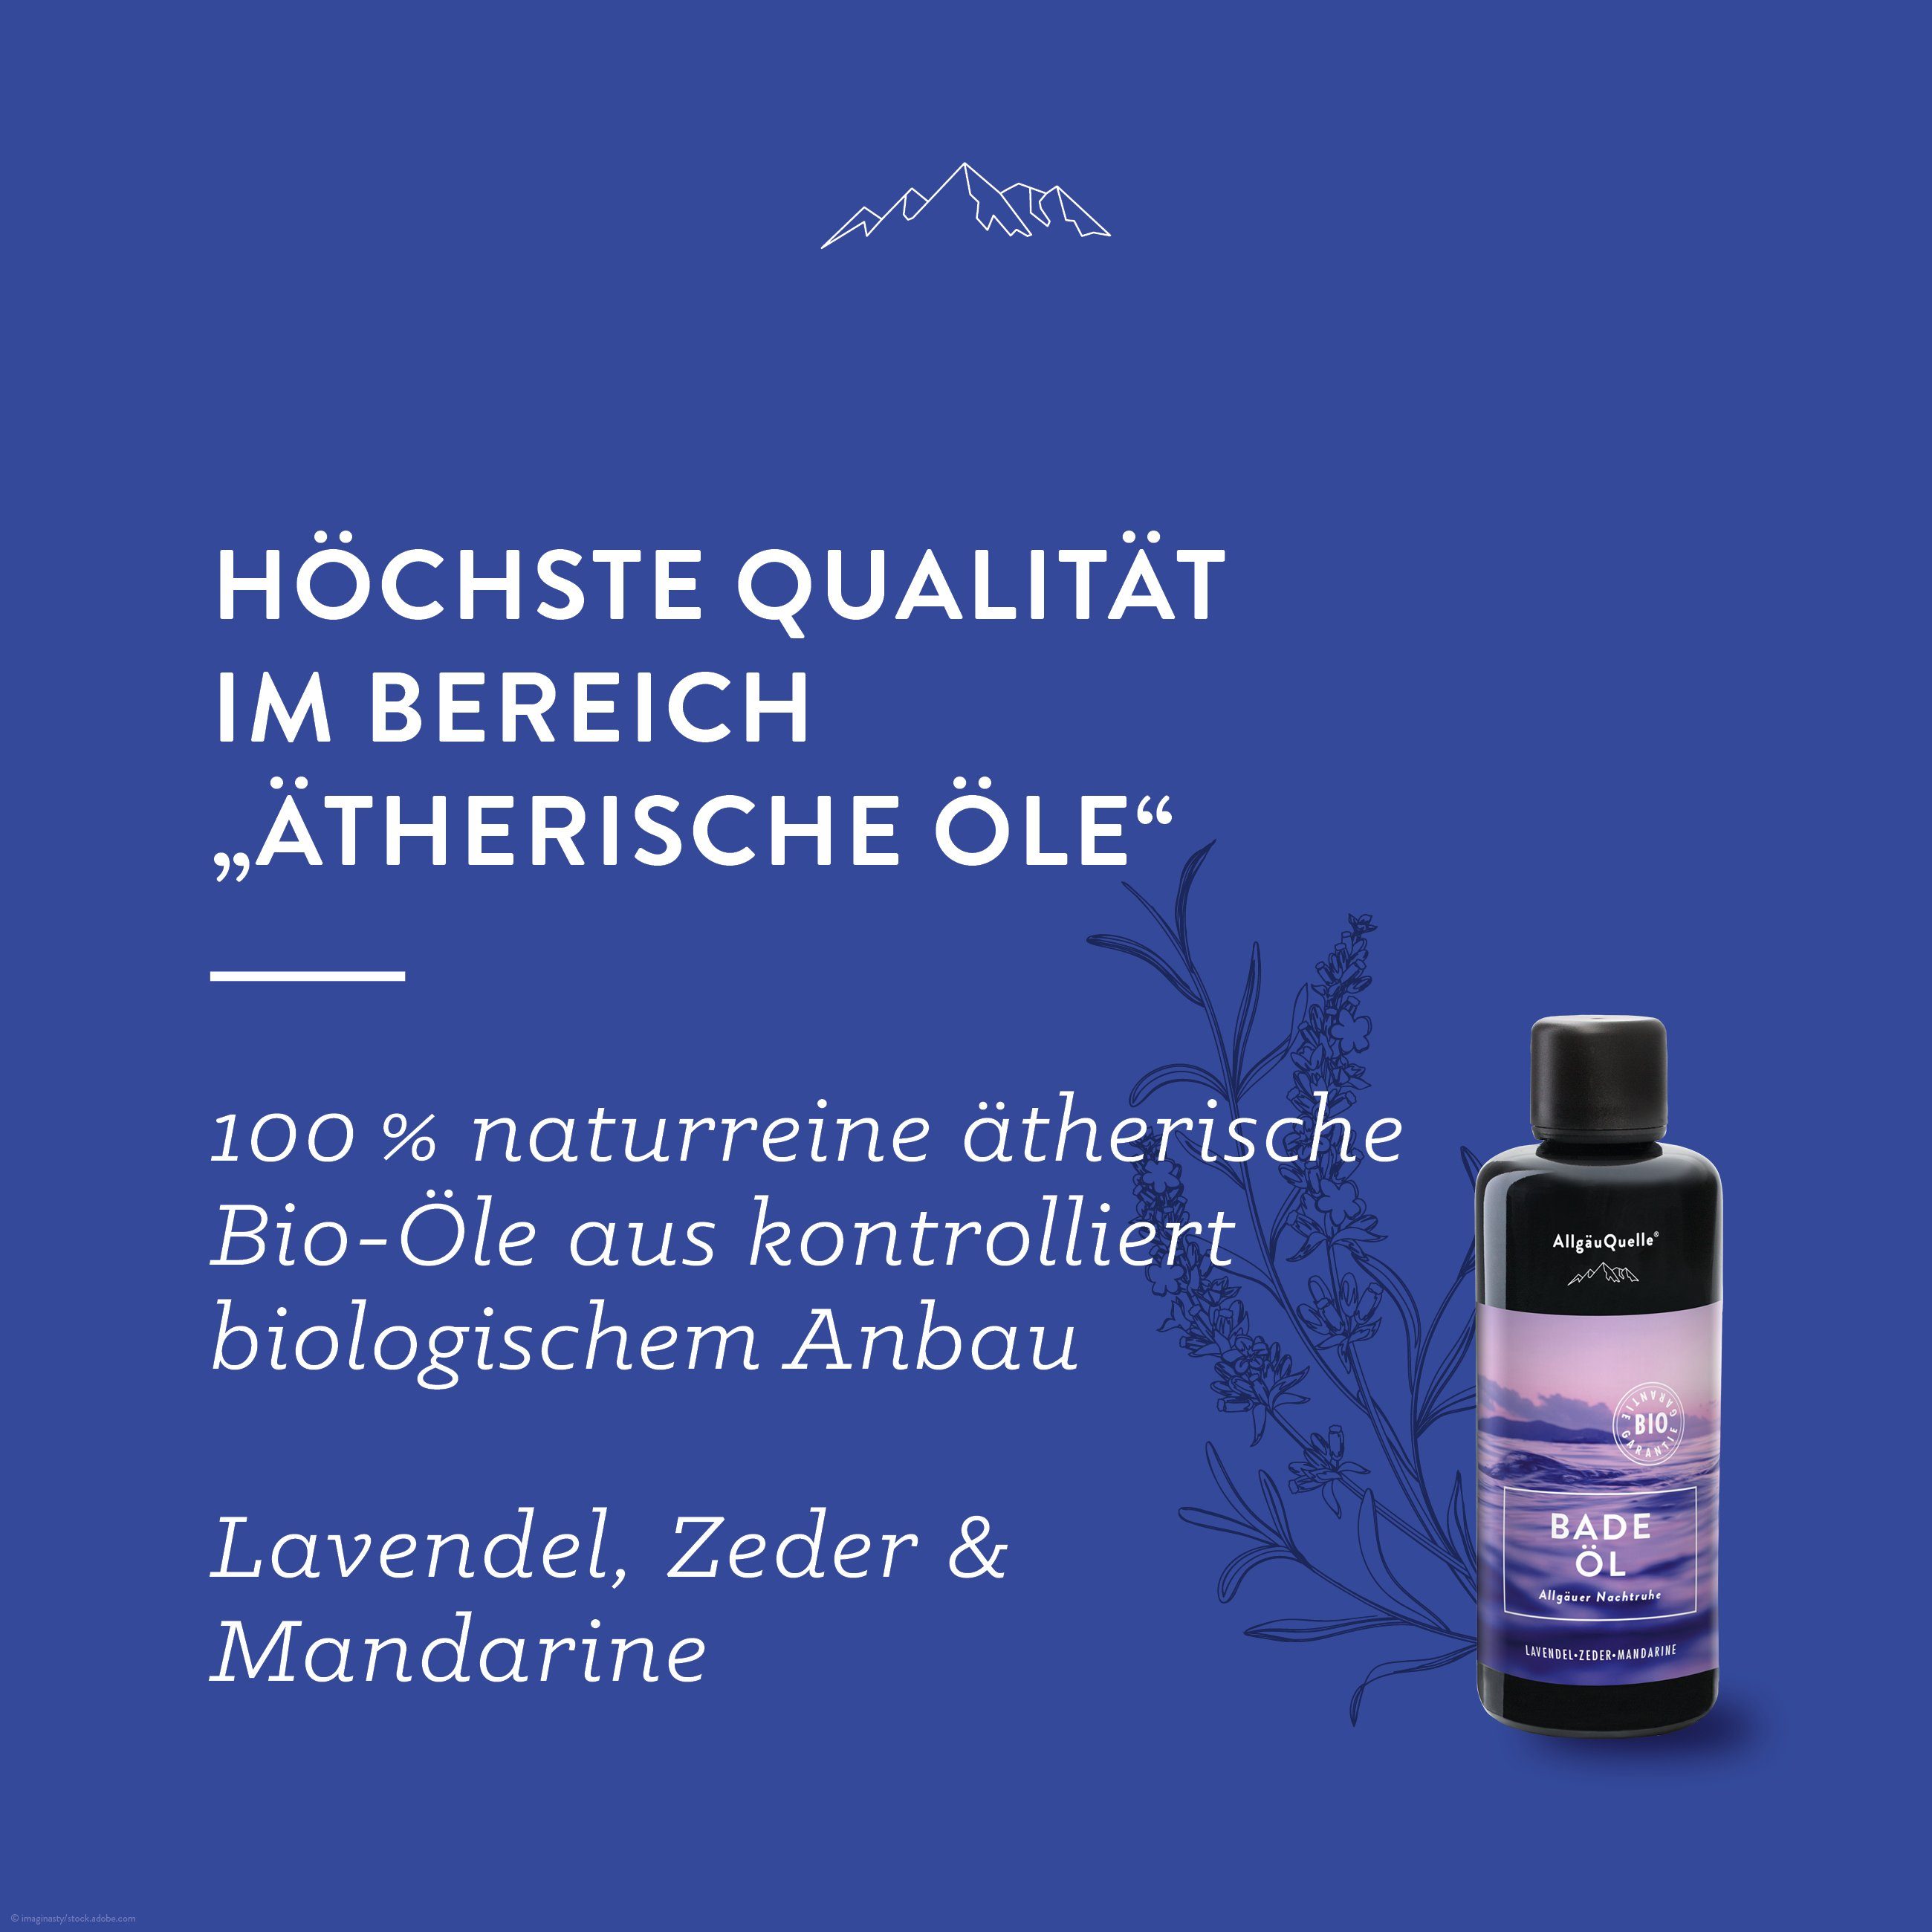 Badezusatz Badeöl und Badezusatz, Zeder mit Mandarine Lavendel, Allgäuer Nachtruhe Allgäuquelle Bio